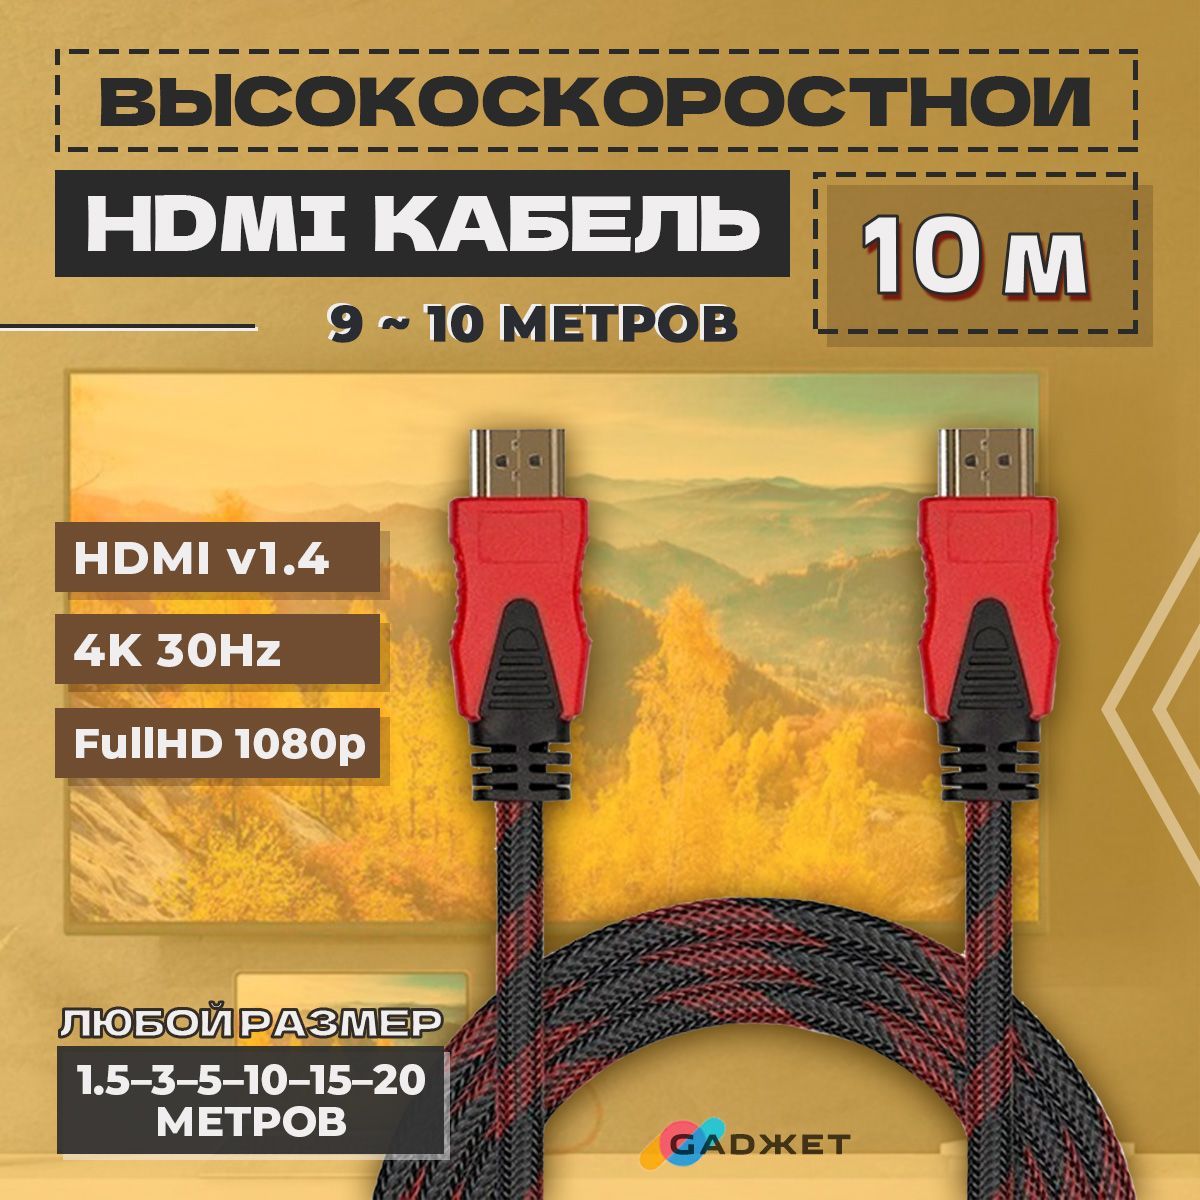 Orkan Leia alias Кабель HDMI Gadжет hdmi - купить по низкой цене в интернет-магазине OZON